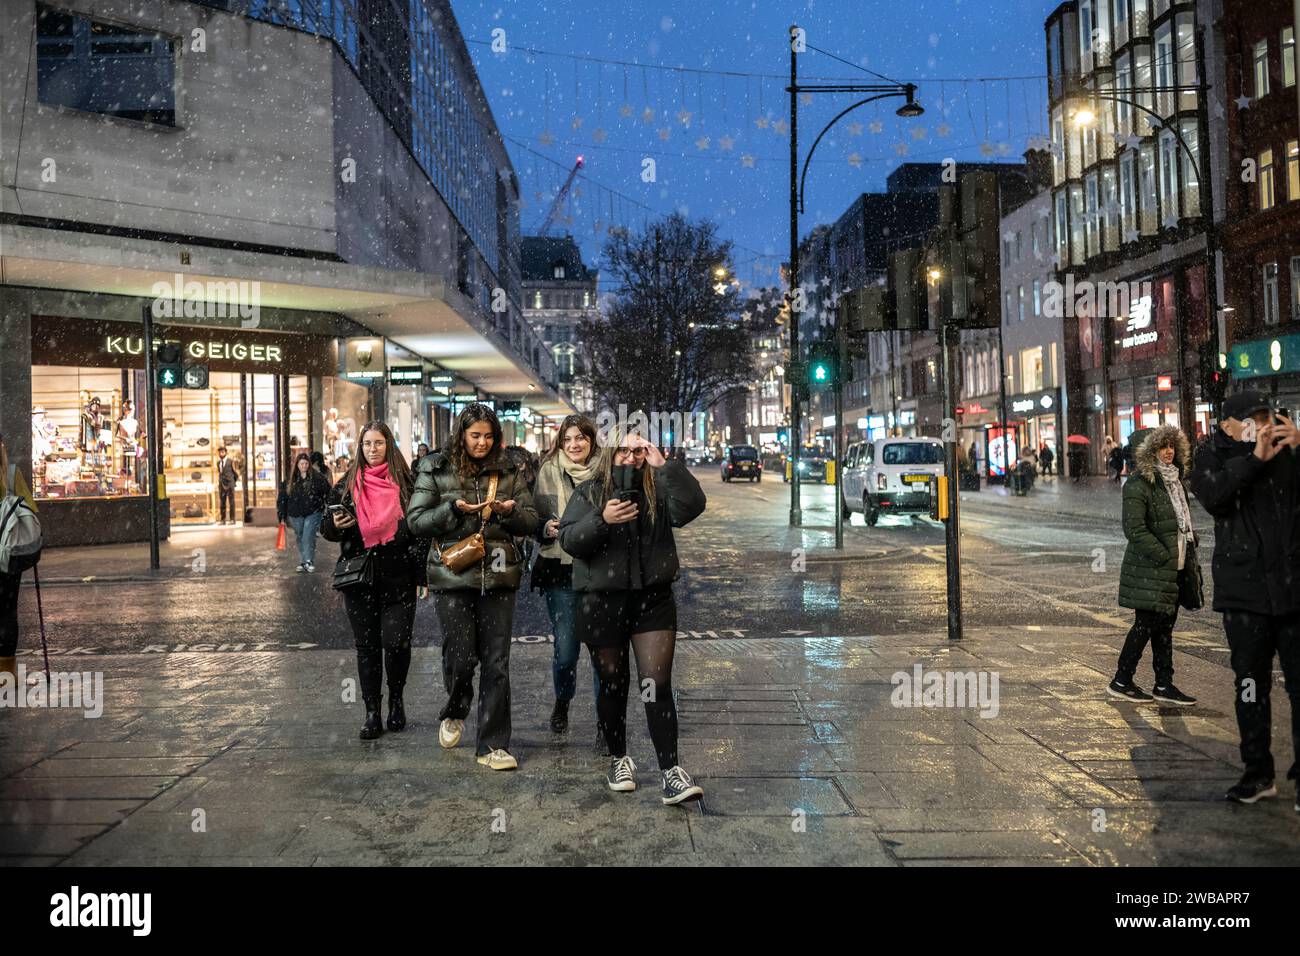 Gli amanti dello shopping affrontano il freddo inverno durante le nevi fredde e le docce a pioggia su Oxford Street, la High Street più trafficata di Londra, Inghilterra, Regno Unito Foto Stock